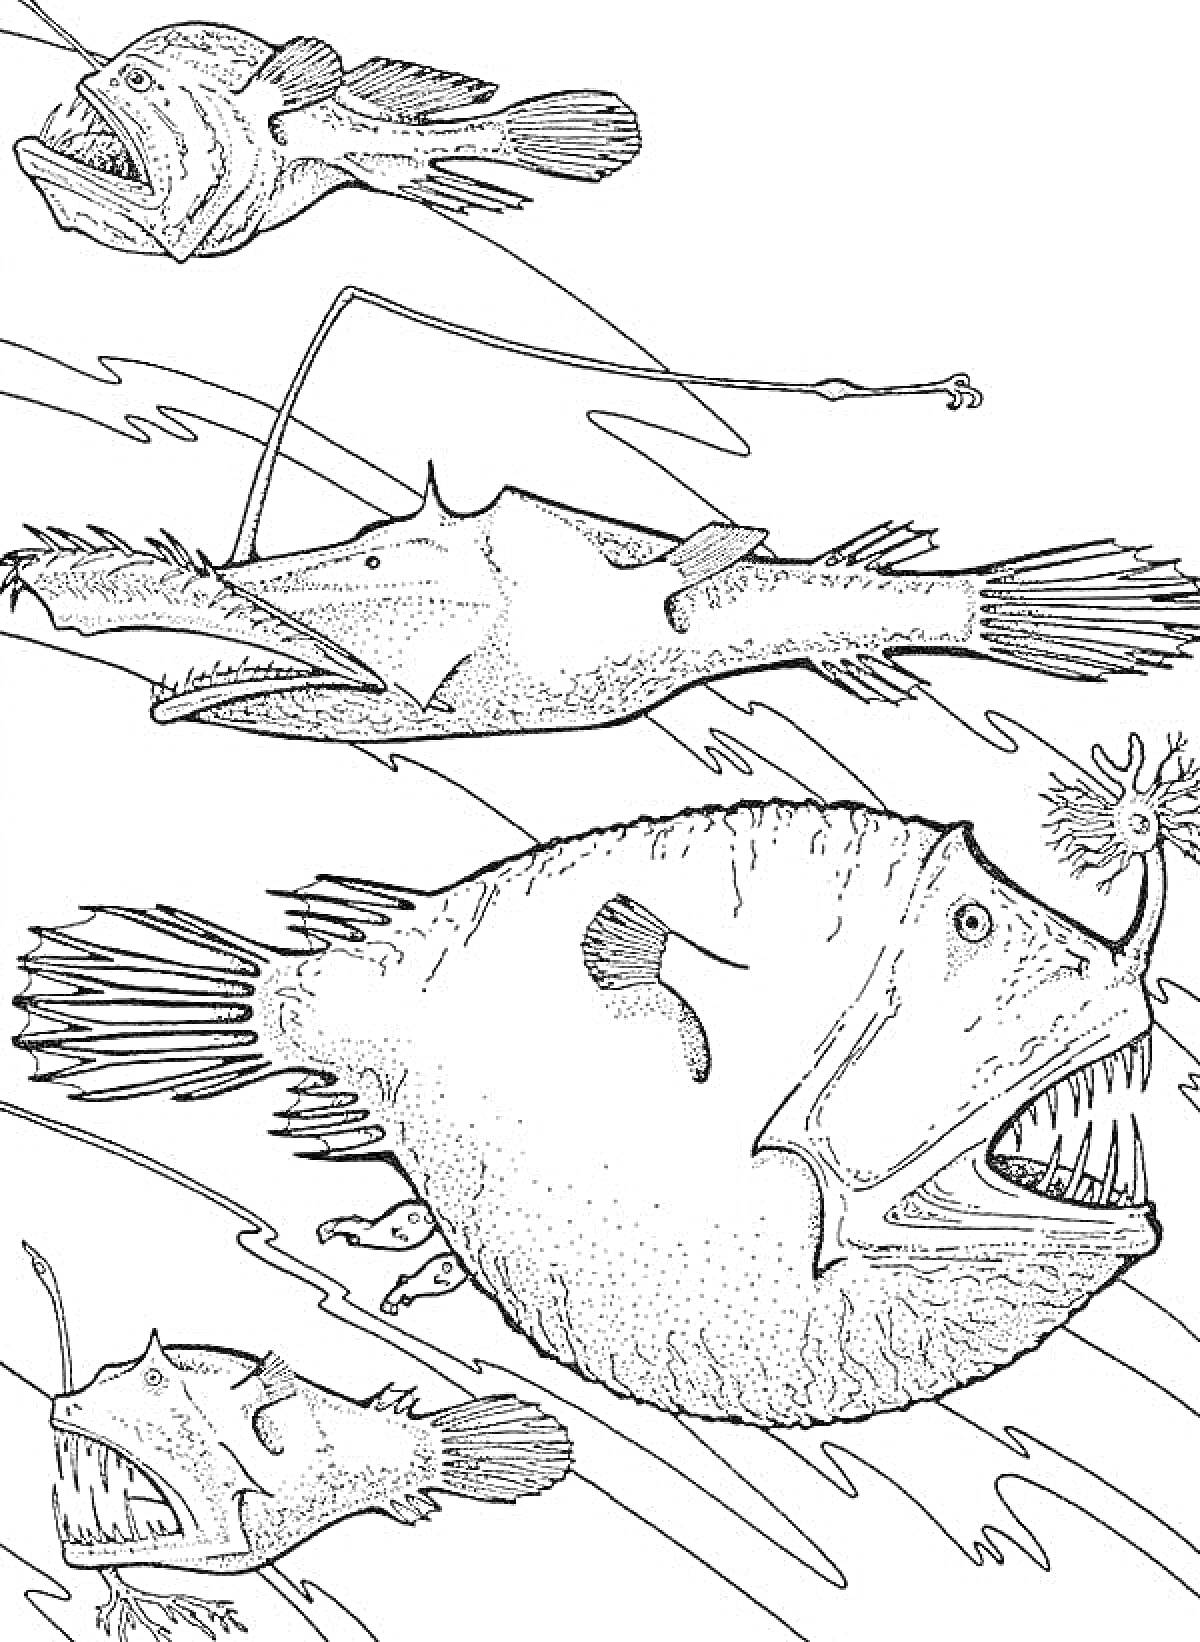 Раскраска Удильщики в подводном мире, четыре удильщика разных форм и размеров с характерными иллюминисцентными «удочками» на головах плавают в подводном окружении